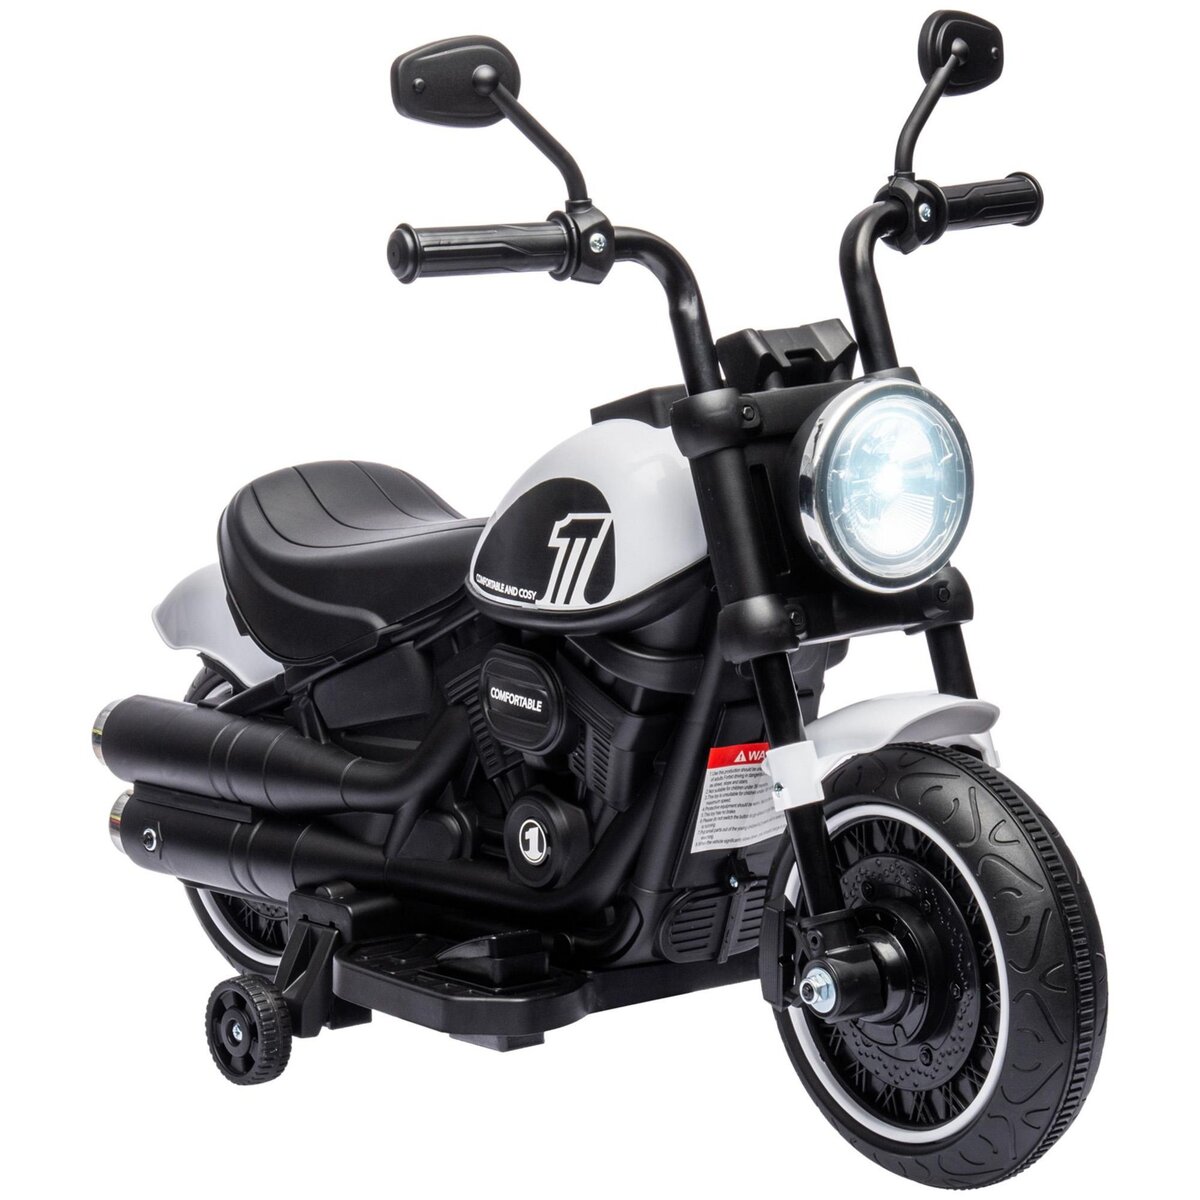 HOMCOM Moto électrique enfant 6 V 3 Km/h effet lumineux roulettes amovibles repose-pied pédale métal PP blanc noir